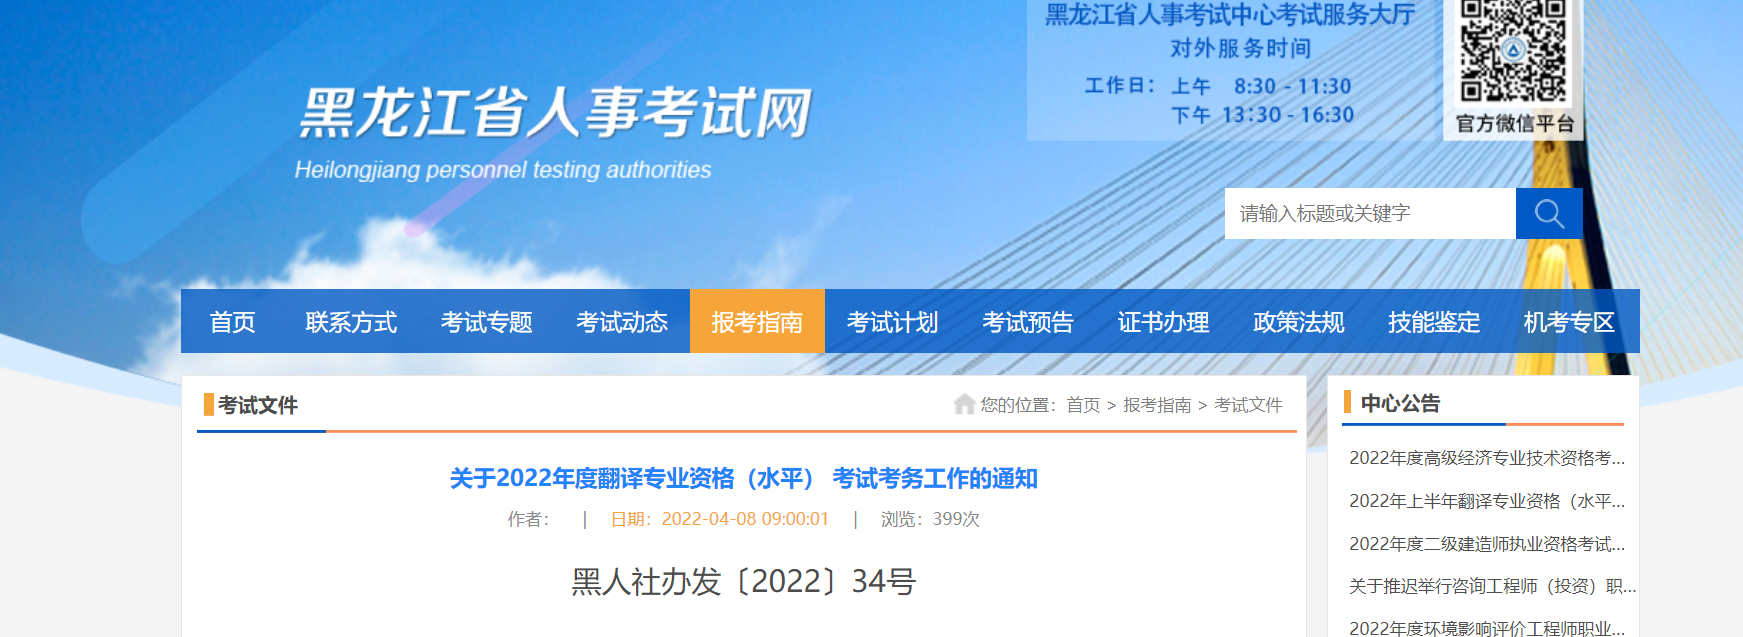 2022黑龙江翻译专业资格考试报名时间、条件及入口【上半年4月13日起 下半年9月1日起】